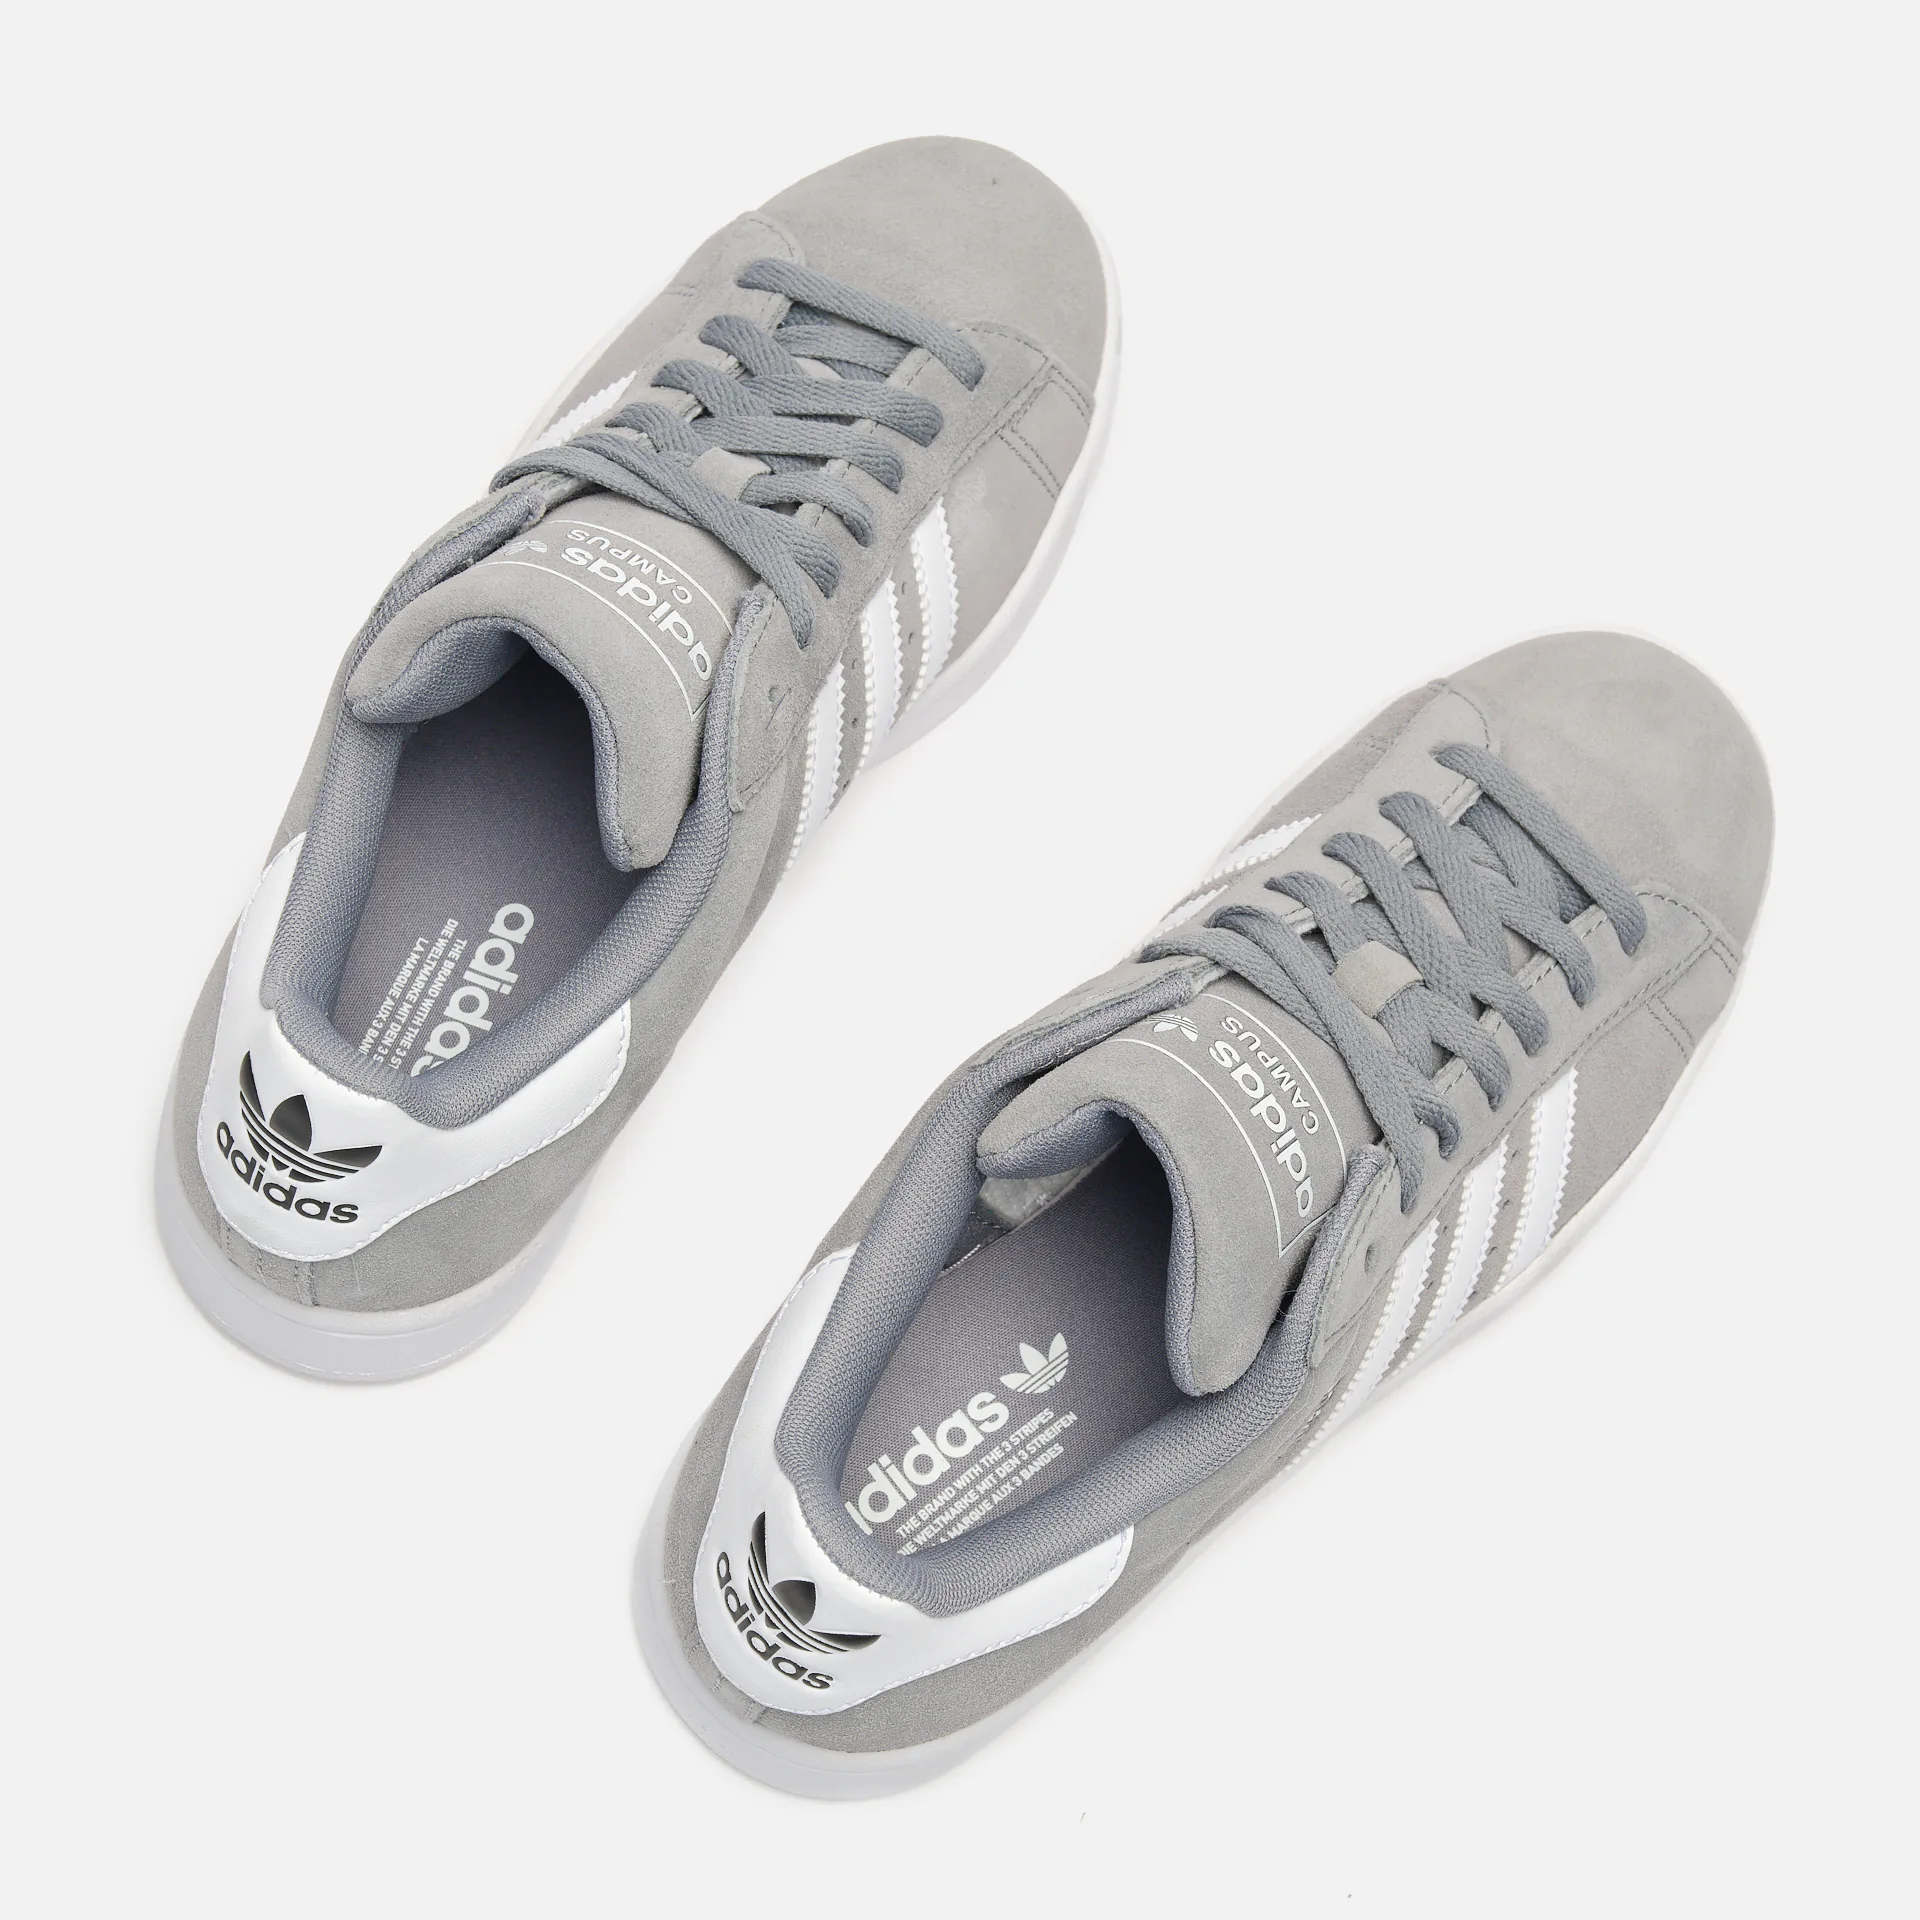 adidas Originals Sneaker Campus 2 Grey/Footwear White/Core Black